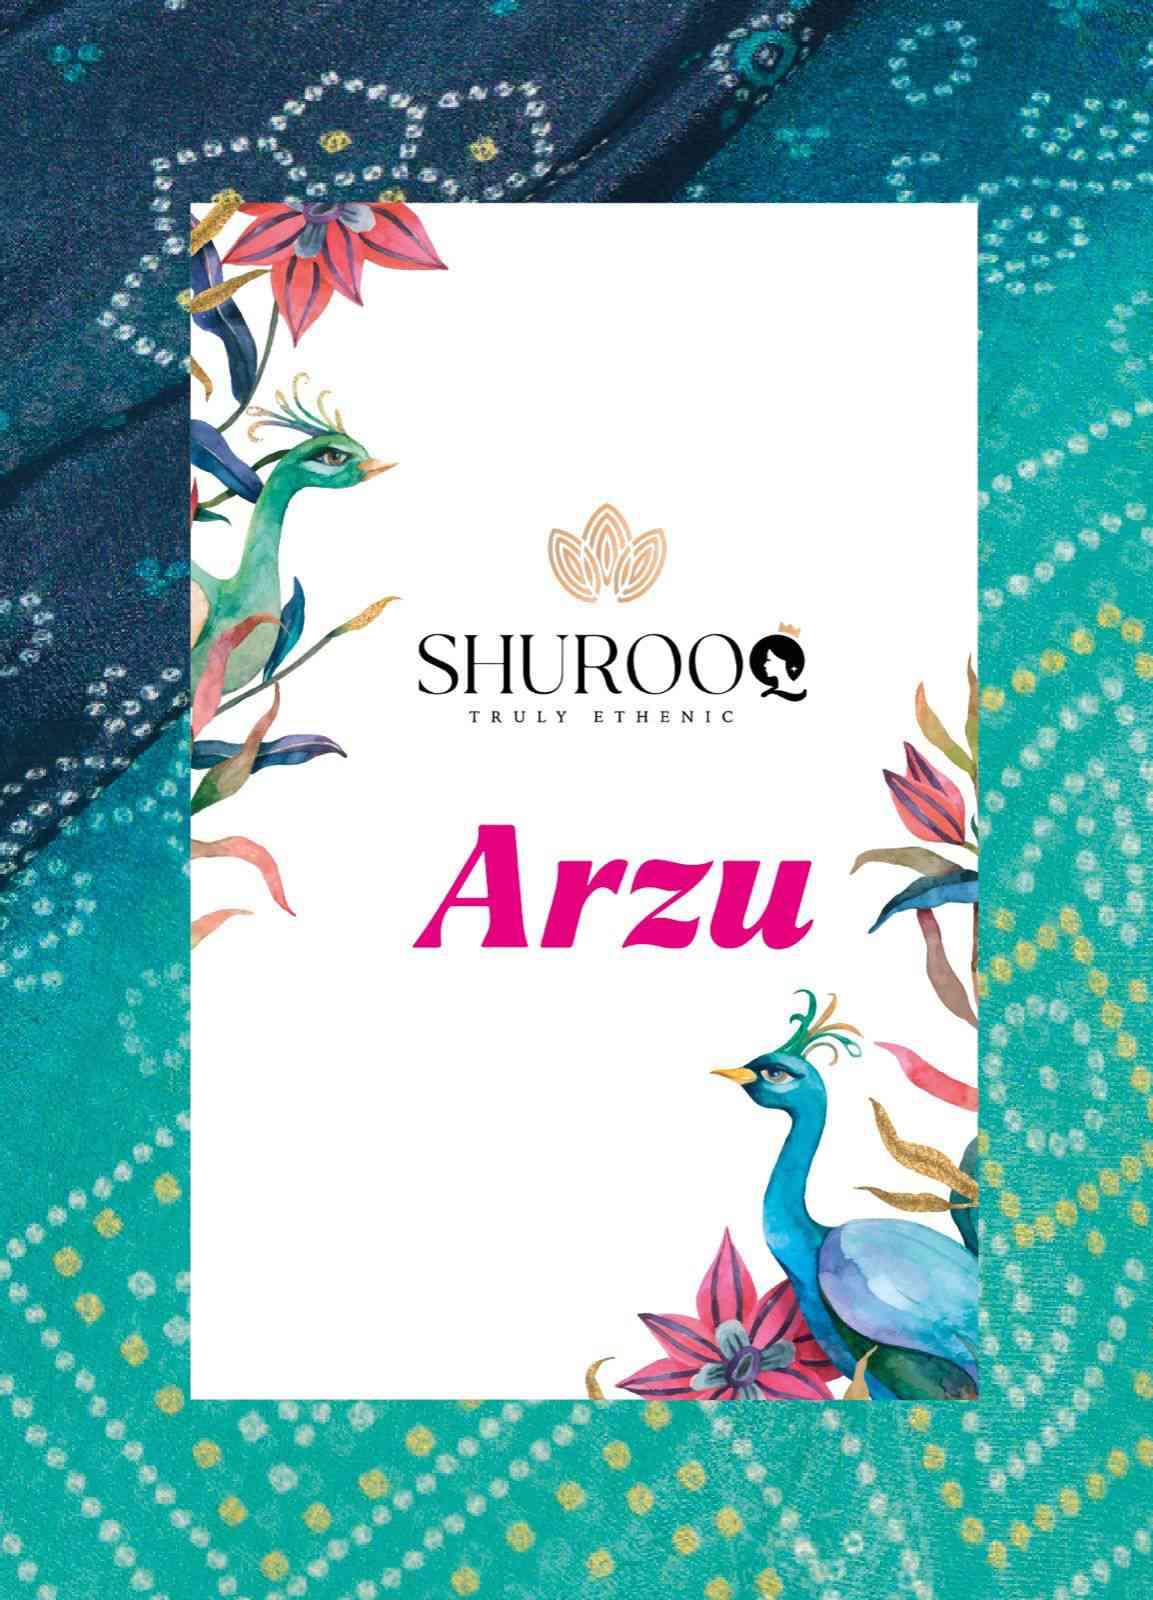 Shurooq Arzu Bandhani Designs Party Wear Jacquard Salwar Suit Wholesaler